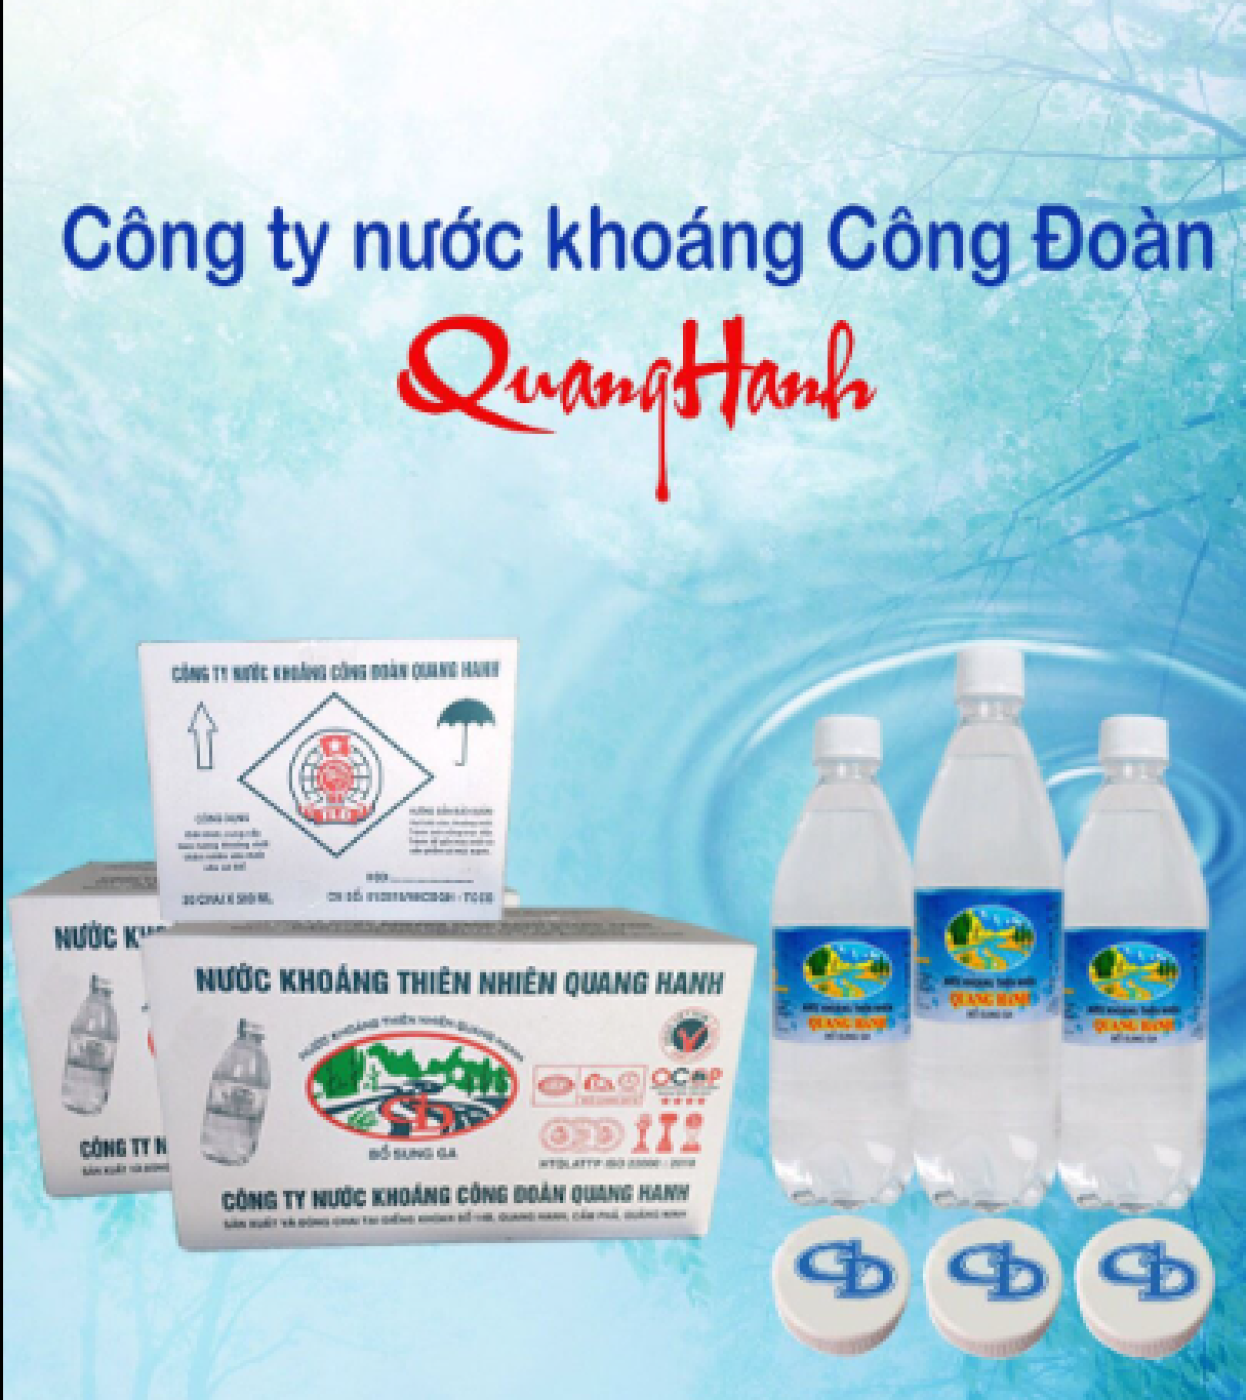 Nước khoáng mặn Quang Hanh chính hãng Công Đoàn Quảng Ninh - Thùng 20 chai 500ml